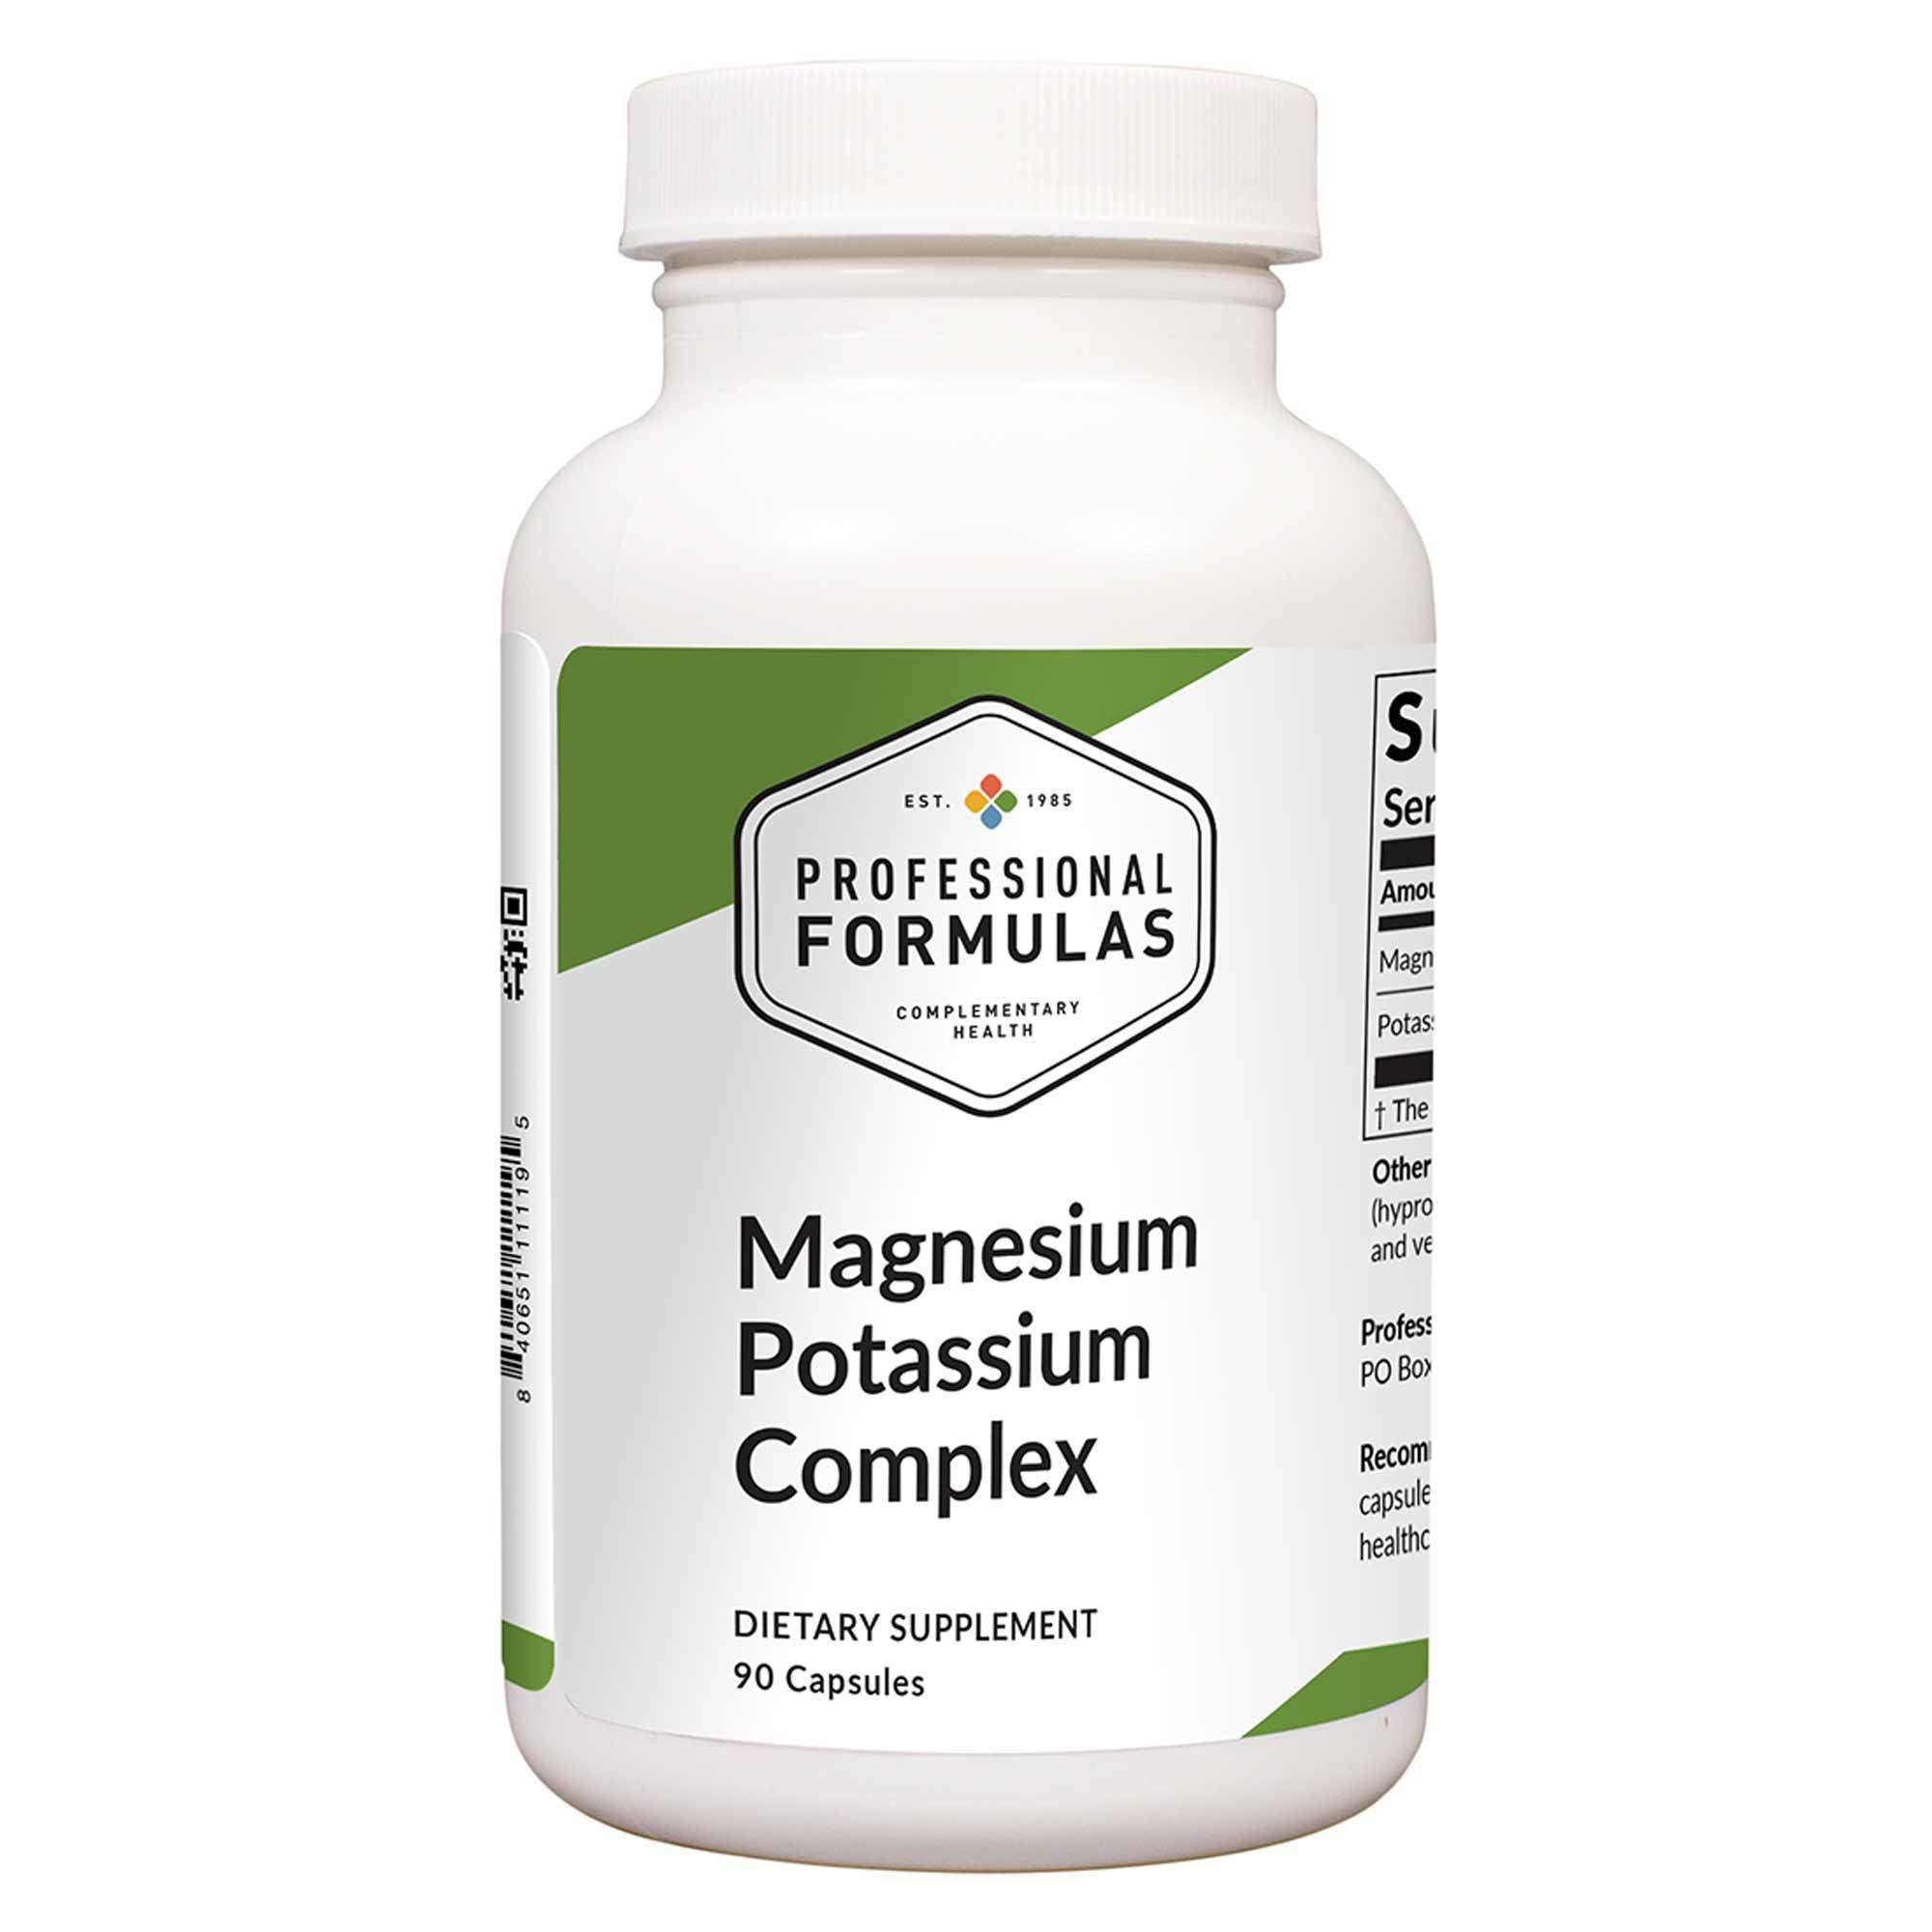 Professional Formulas Magnesium Potassium Complex 90 Capsules - 2 Pack